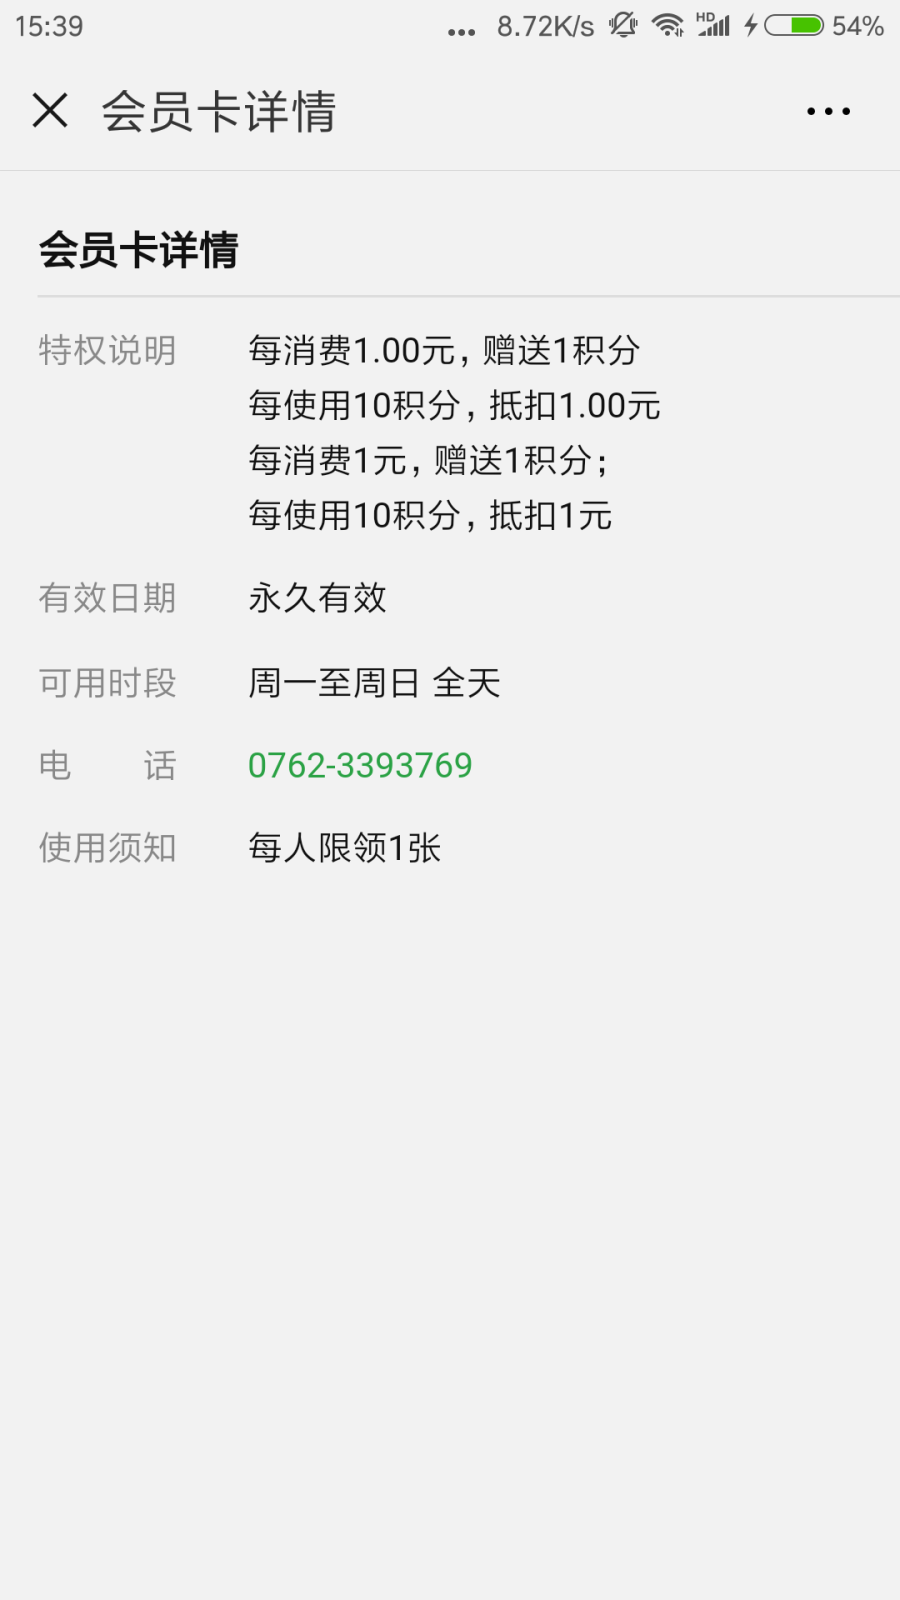 Screenshot_2018-08-27-15-39-47-065_com.tencent.mm.png